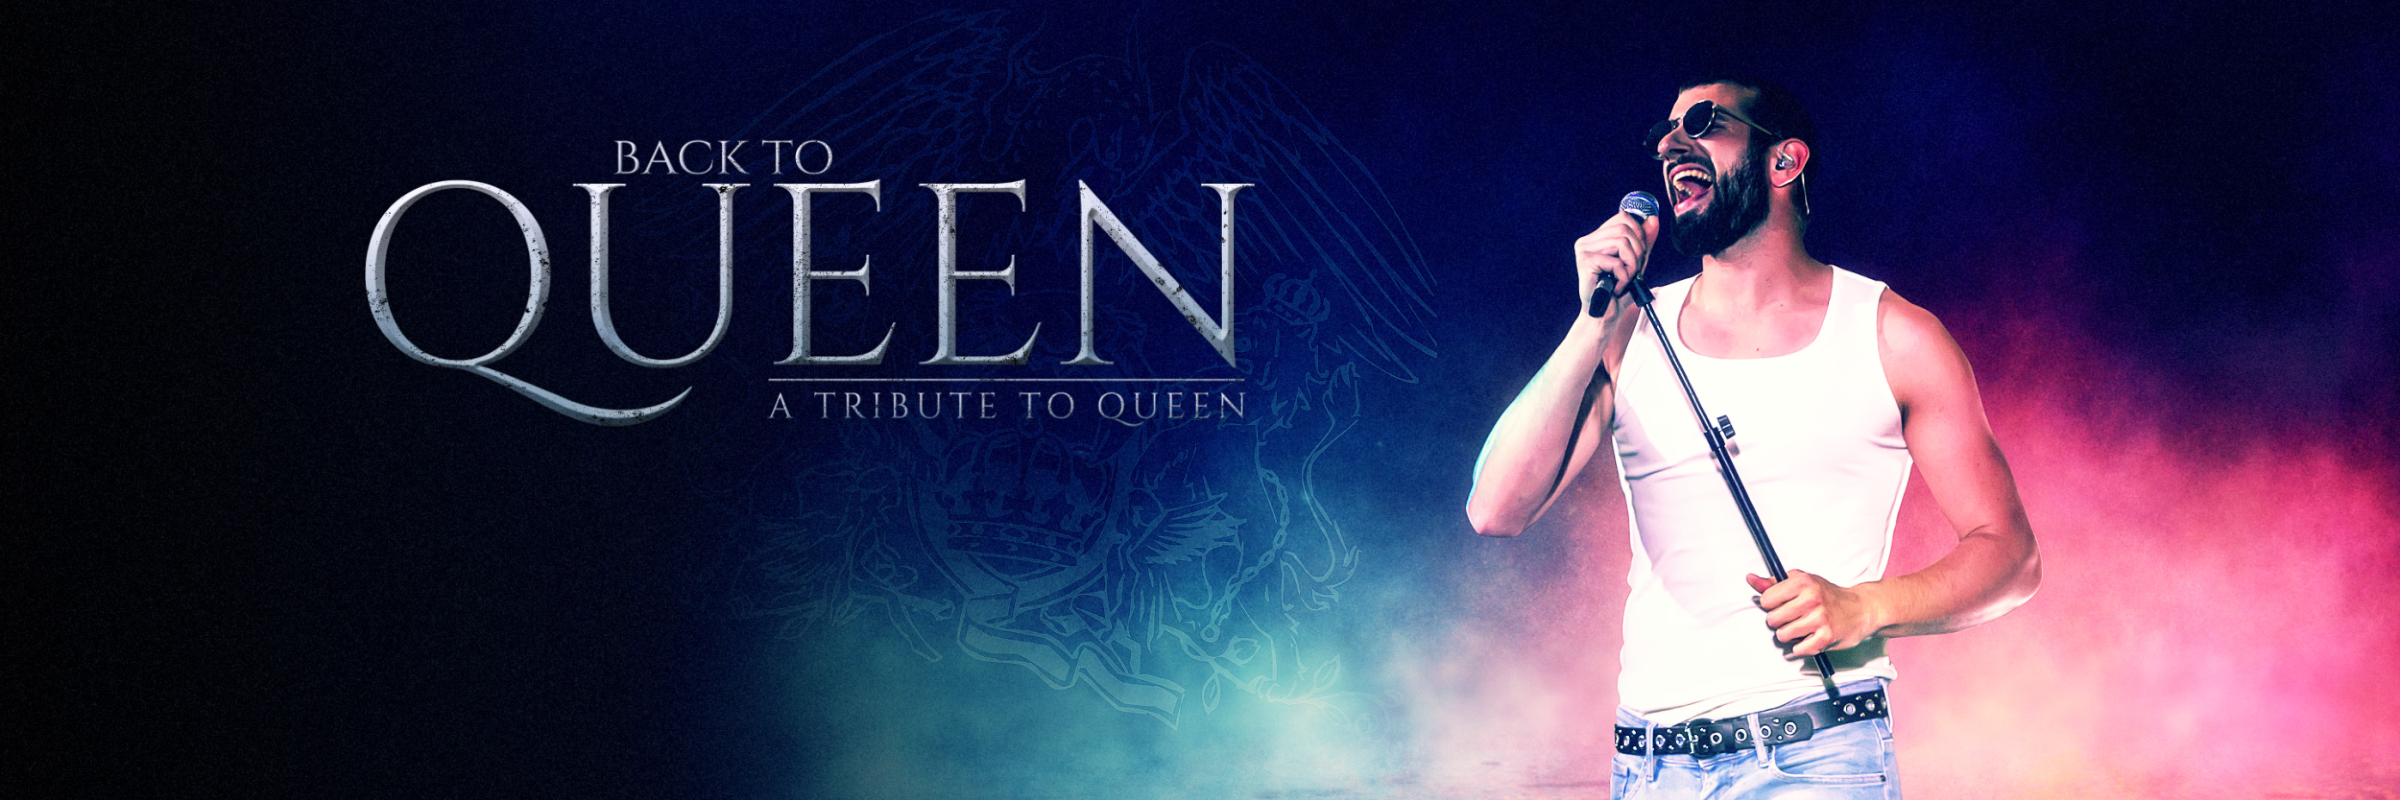 Back to Queen, groupe de musique Rock en représentation à Maine et Loire - photo de couverture